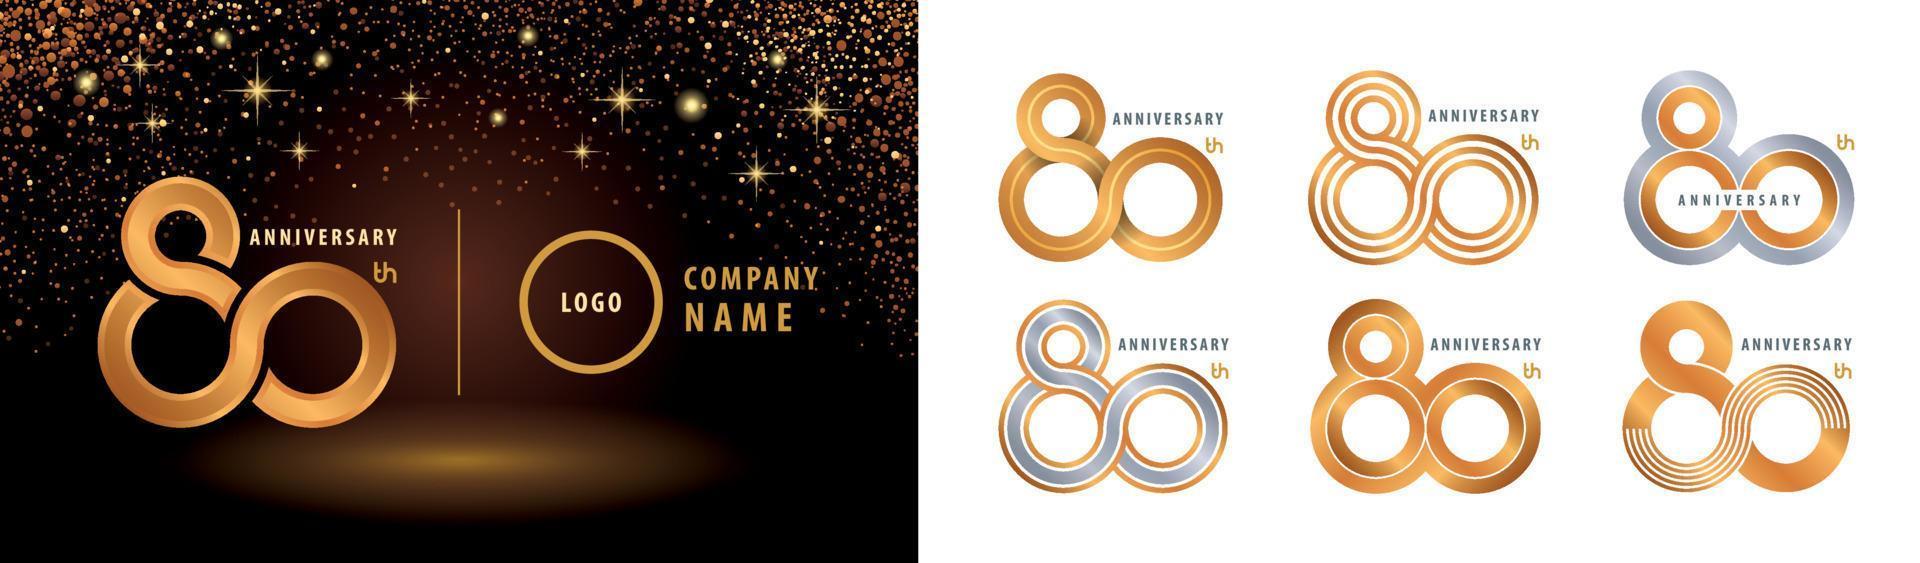 conjunto de diseño de logotipo del 80 aniversario. vector de logotipo de bucle infinito. celebración del aniversario de ochenta años.